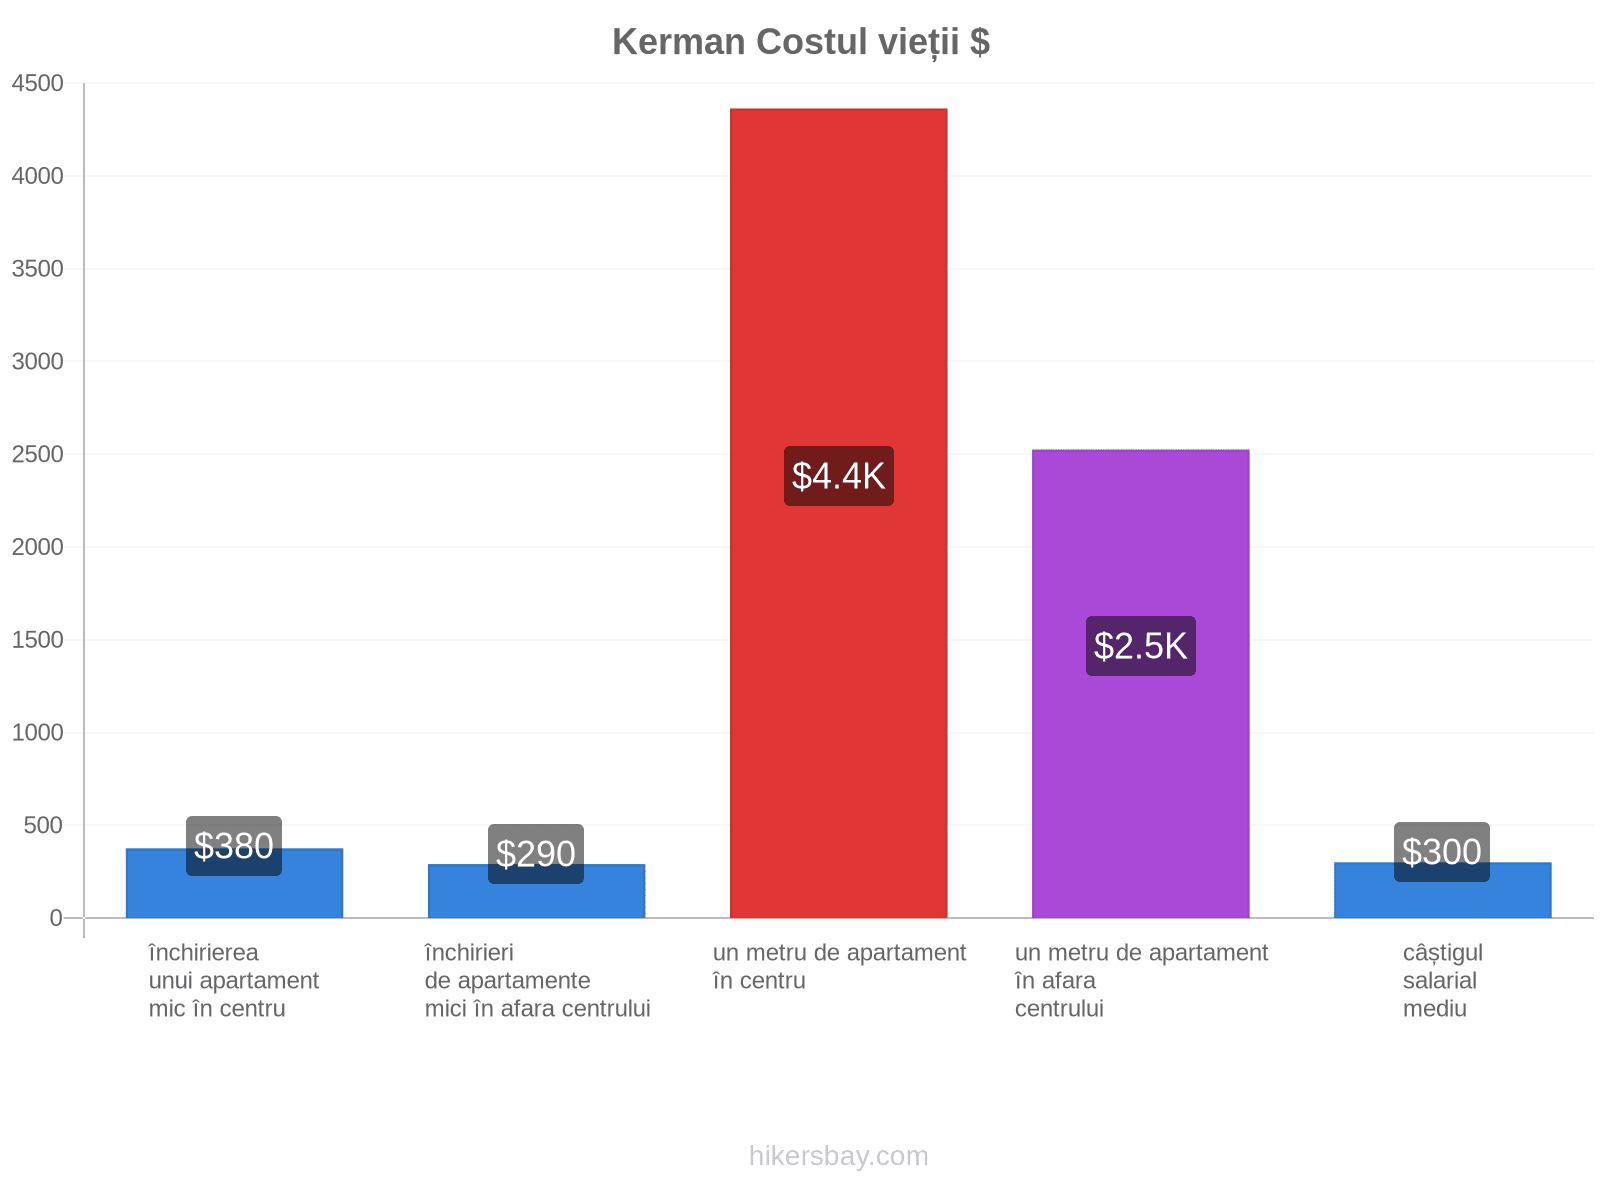 Kerman costul vieții hikersbay.com